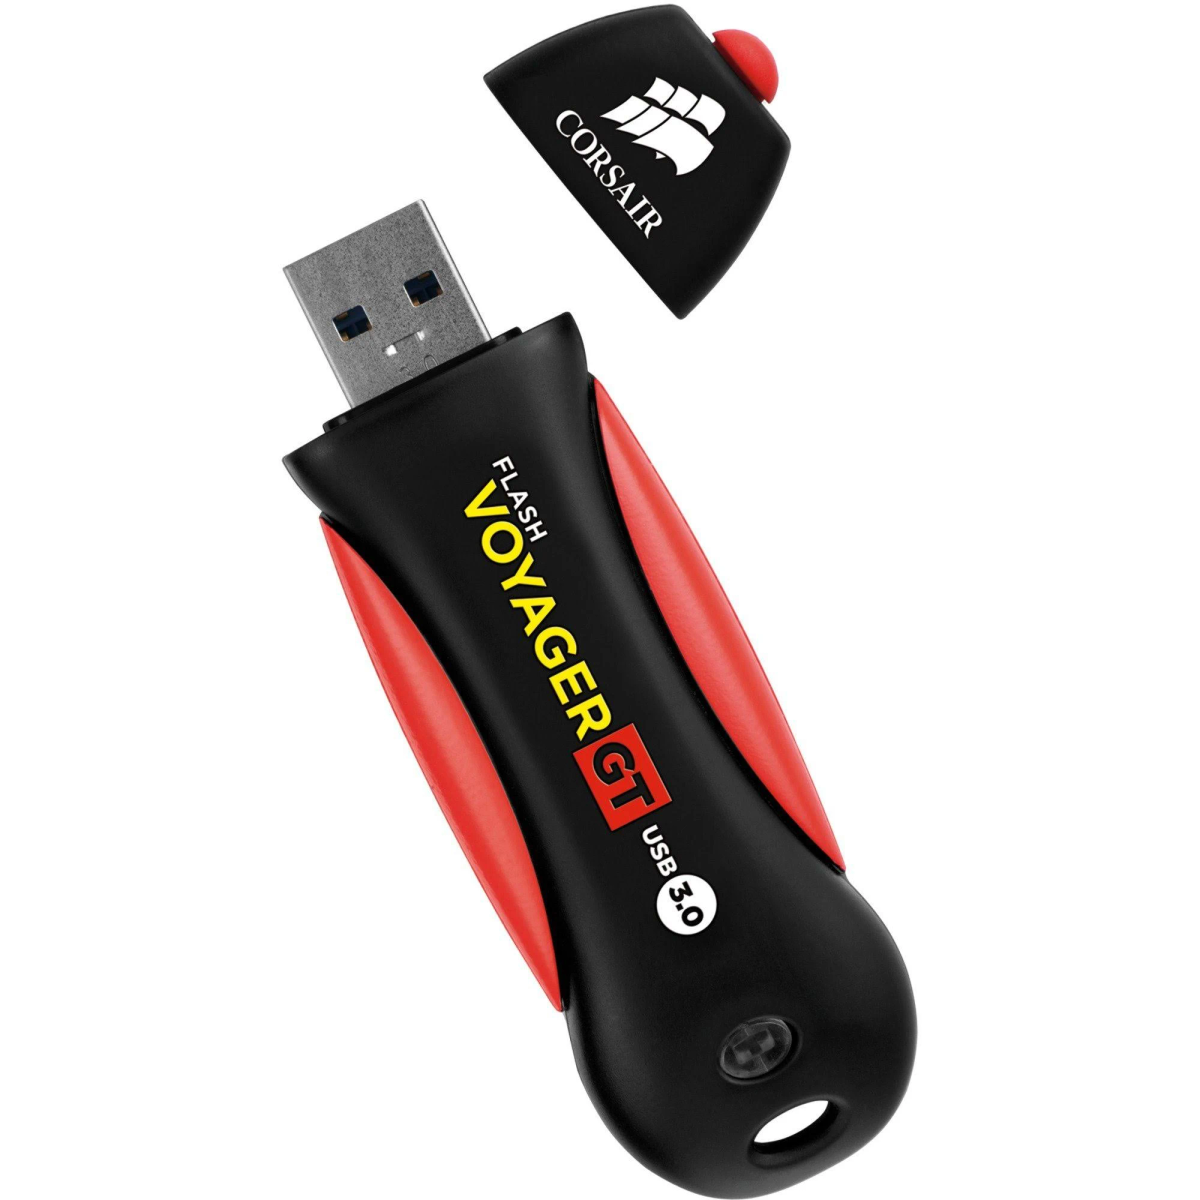 CORSAIR Flash Voyager GT USB-Flash-Laufwerk TB) 1 (Schwarz